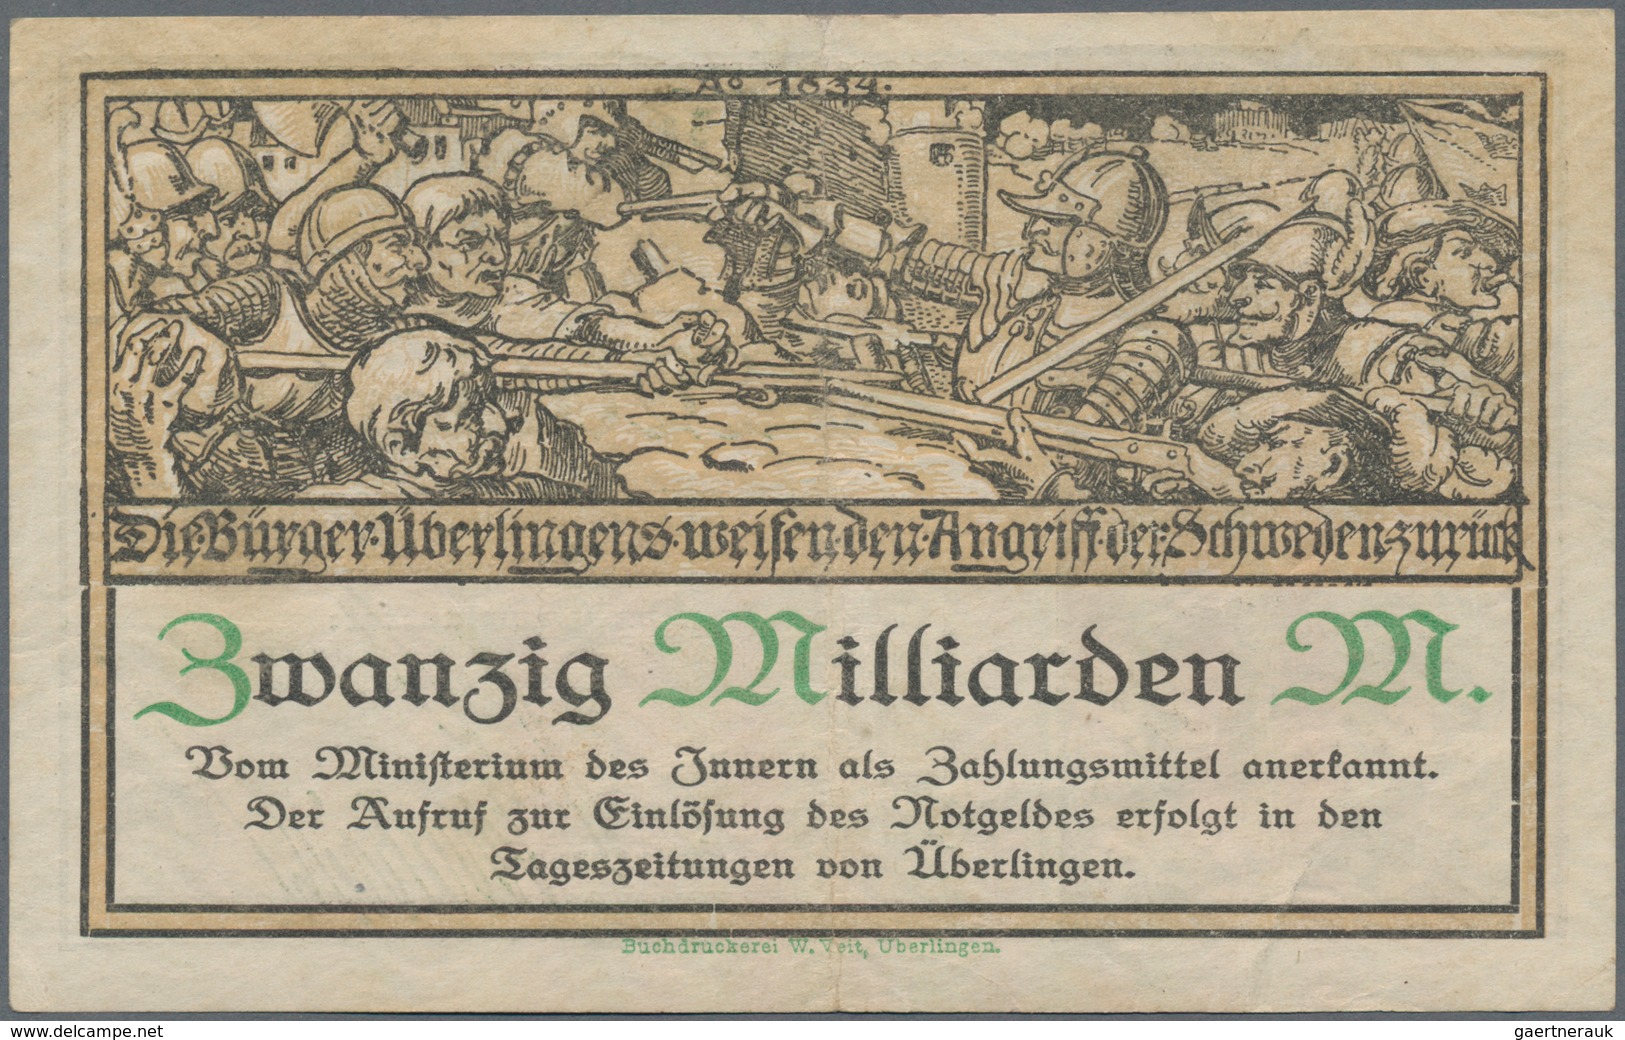 Deutschland - Notgeld - Baden: Überlingen, Stadt, 5 Tsd., 20 Tsd. Mark, 16.2.1923, Mit Druckfirma Un - Lokale Ausgaben